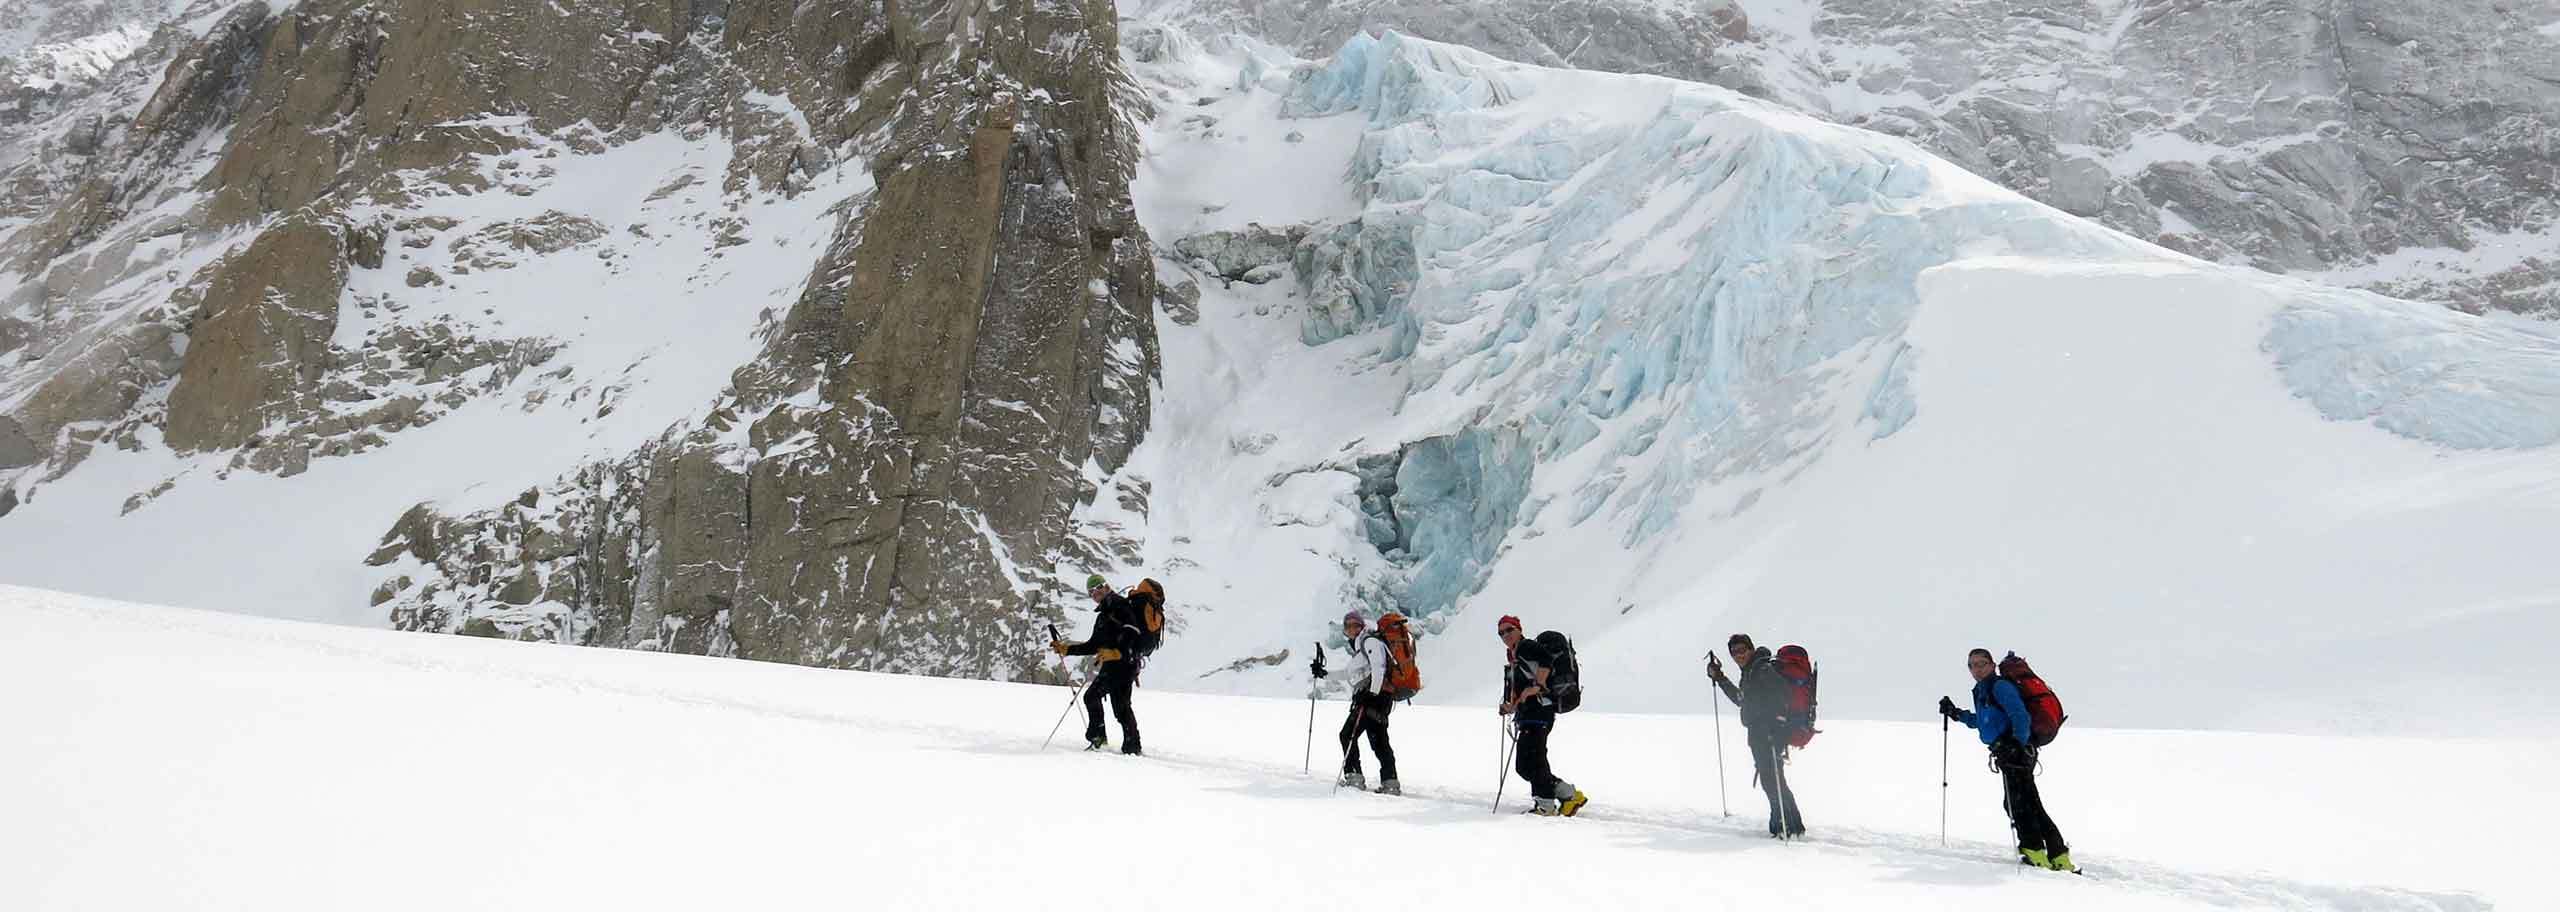 Sci Alpinismo a Courmayeur, Escursioni Sci Alpinistiche in Monte Bianco